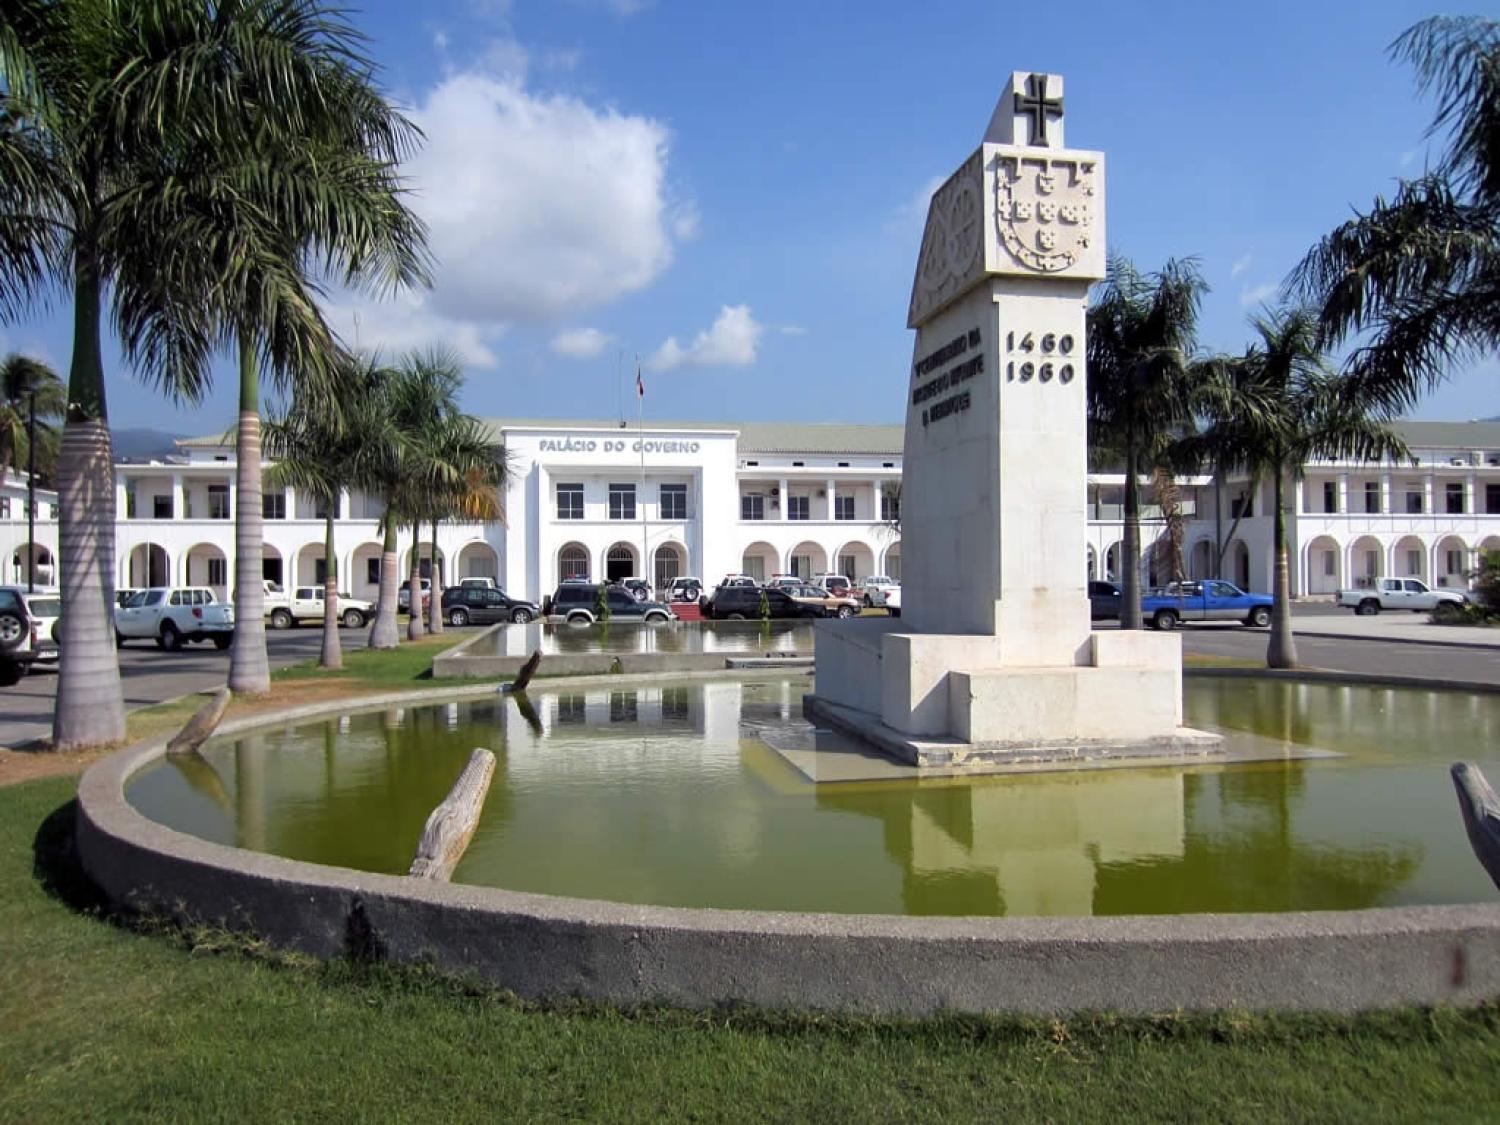 The Palacio do Governo in Dili, Timor-Leste (Photo: David Stanley/Flickr)